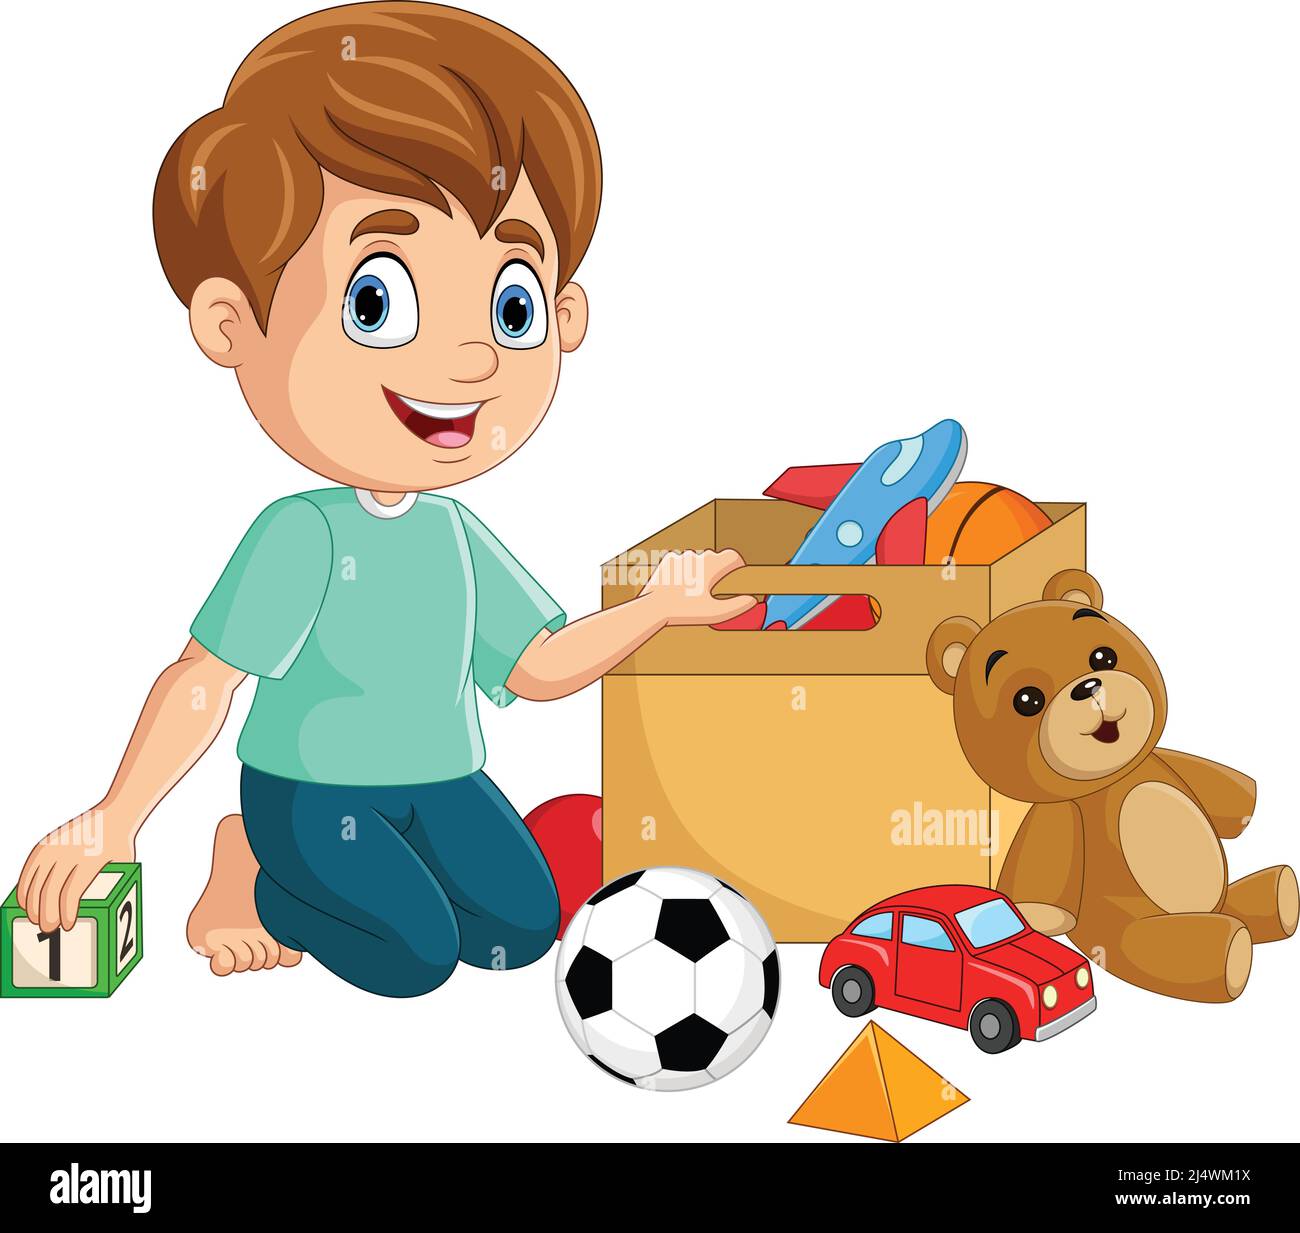 varios juguetes para niños. conjunto de ilustraciones de juguetes